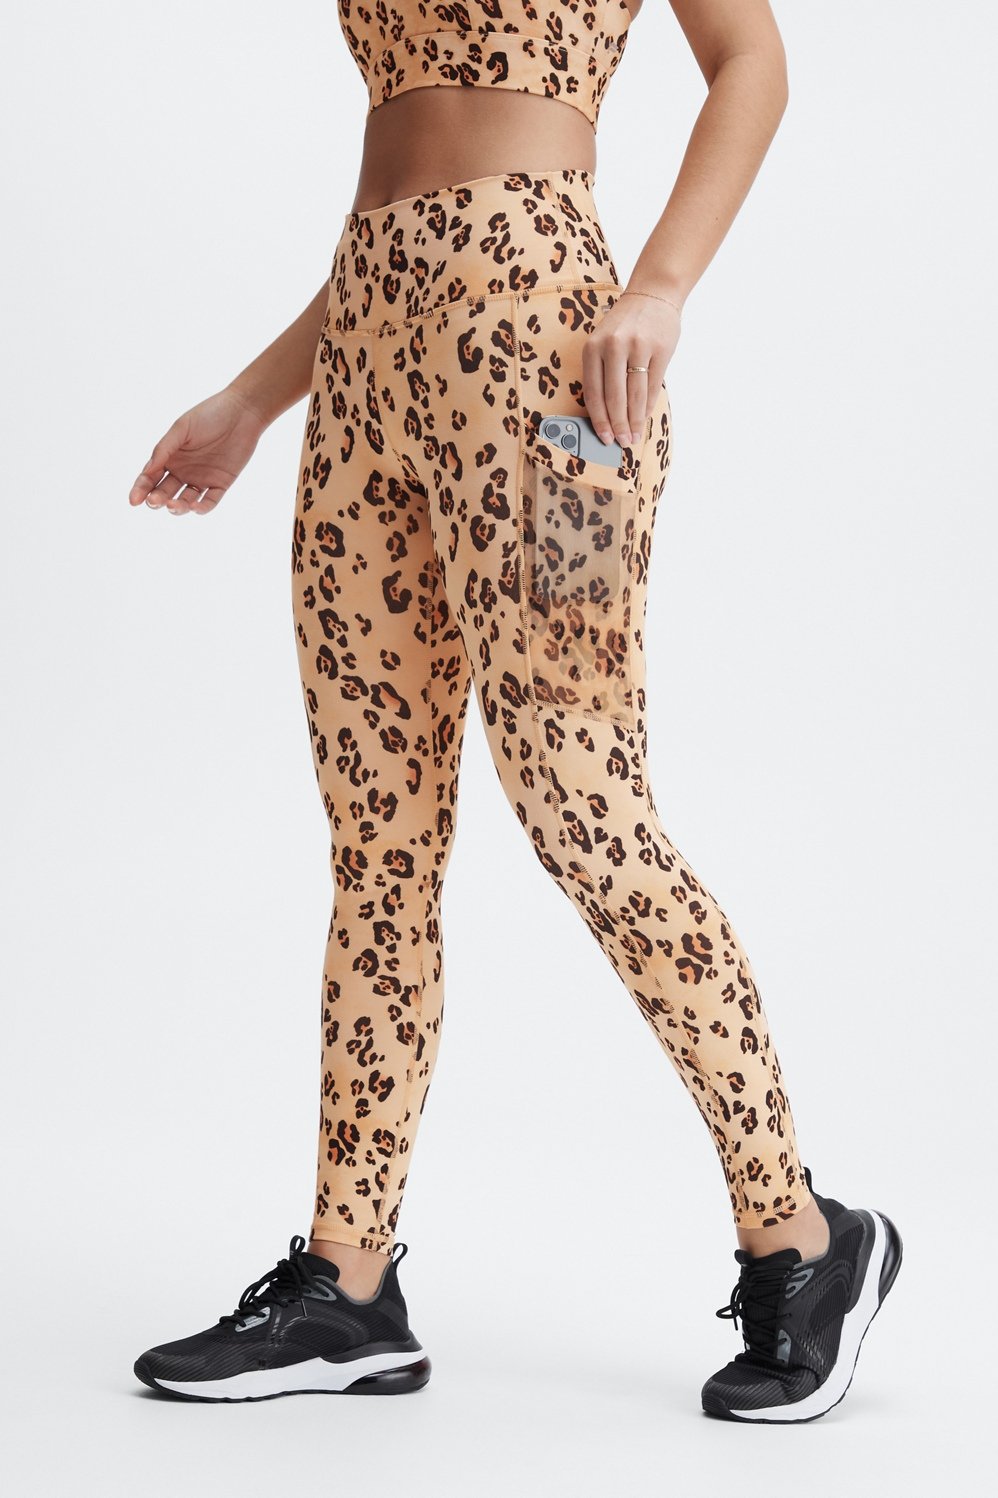 Purple Leopard Women's Activewear Leggings - Tall 33” inside leg